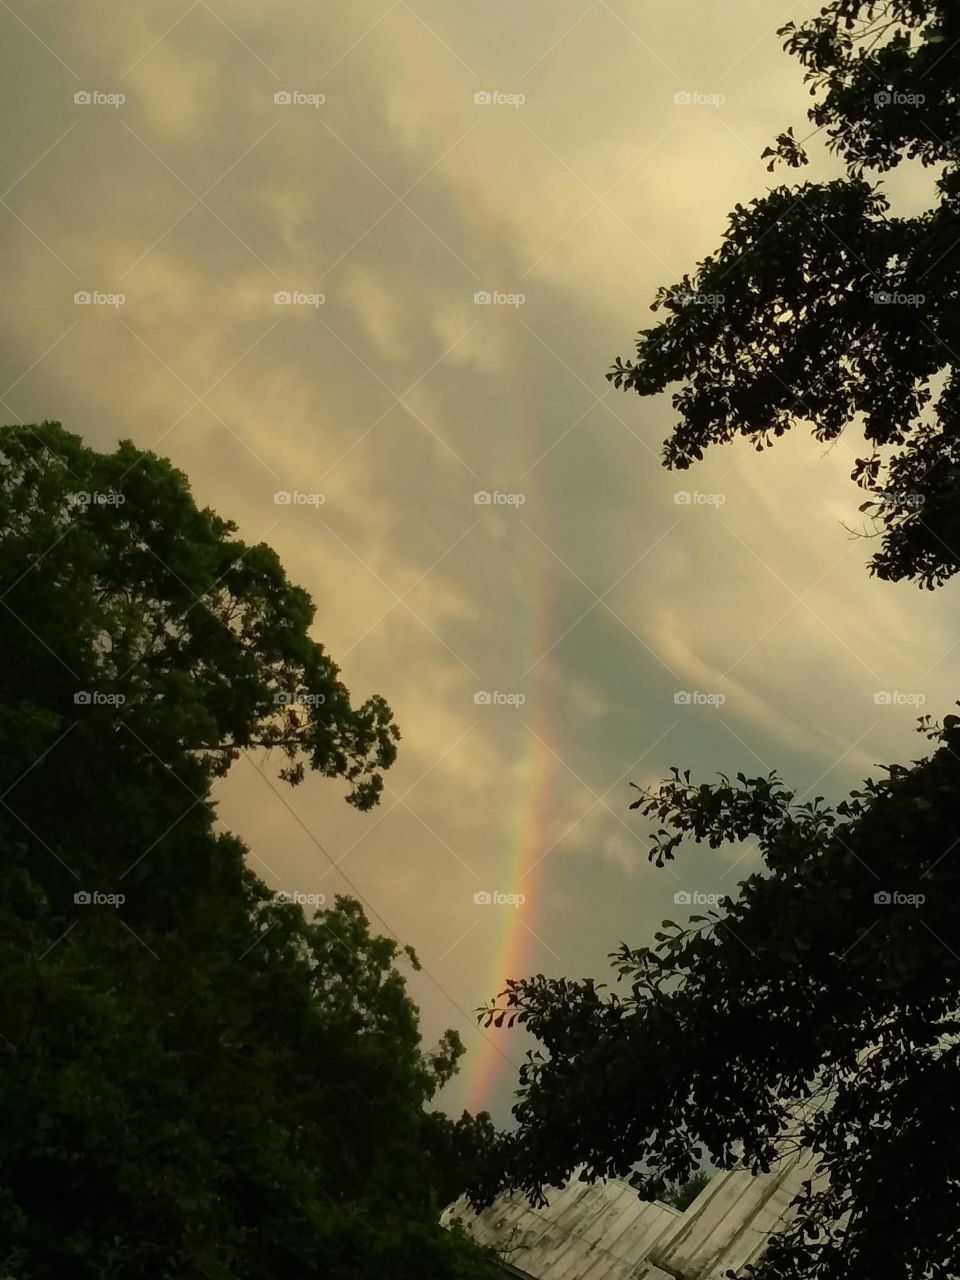 Longest rainbow I've seen